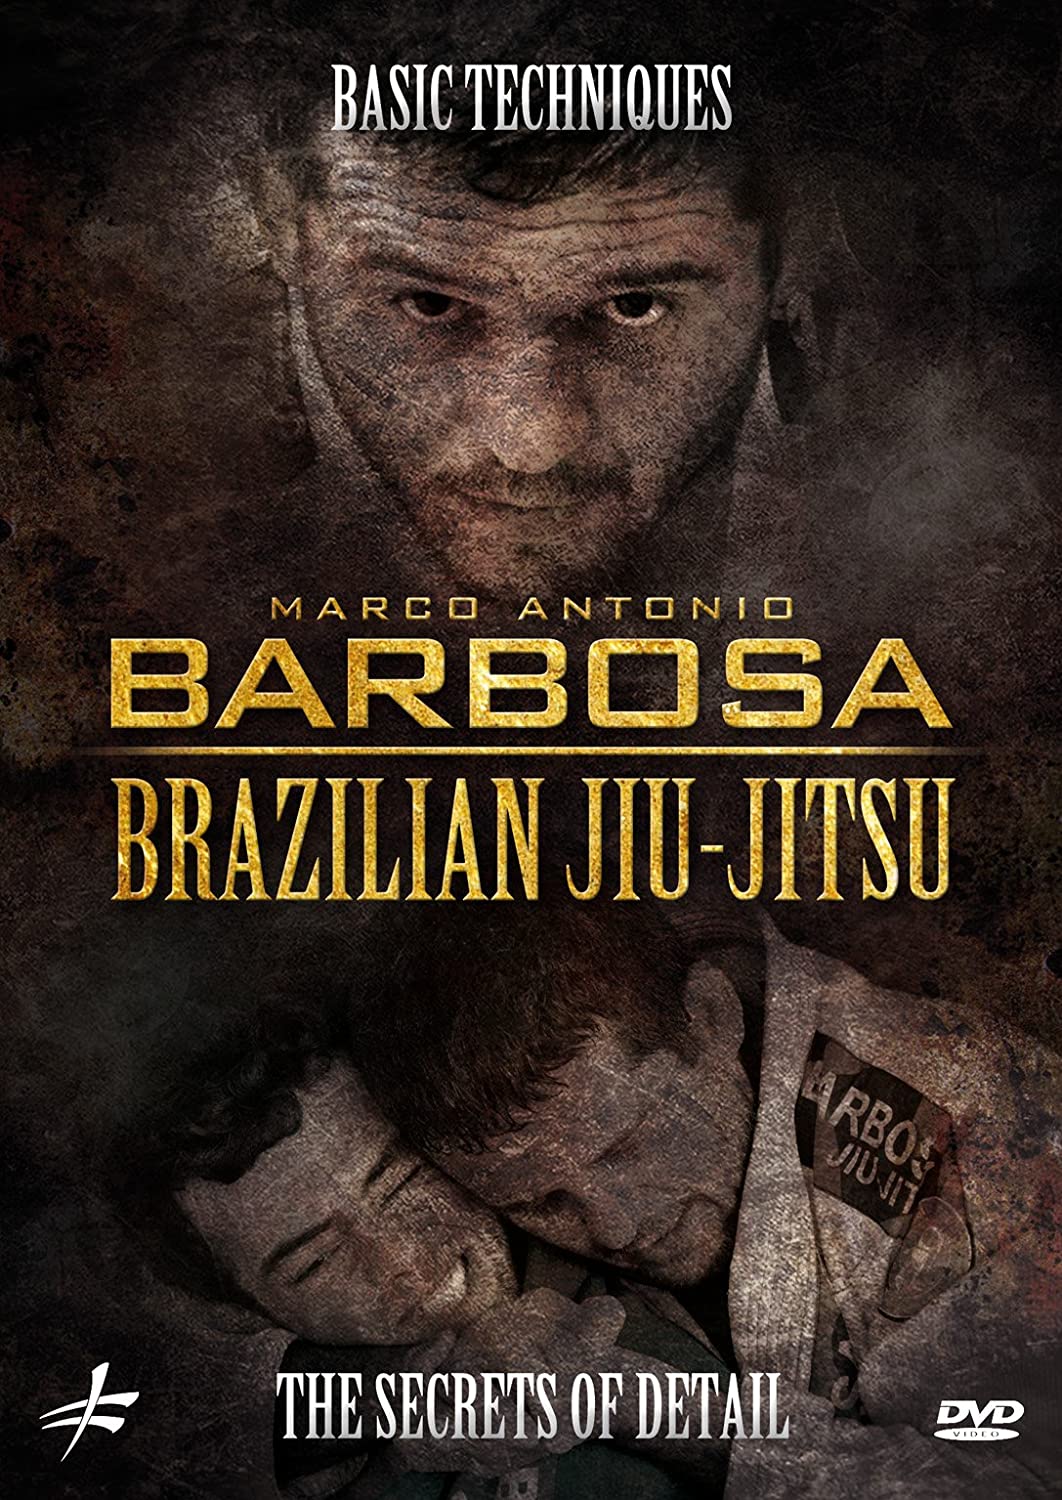 マルコ・アントニオ・バルボーサによるブラジリアン柔術基本テクニック秘密詳細DVD 